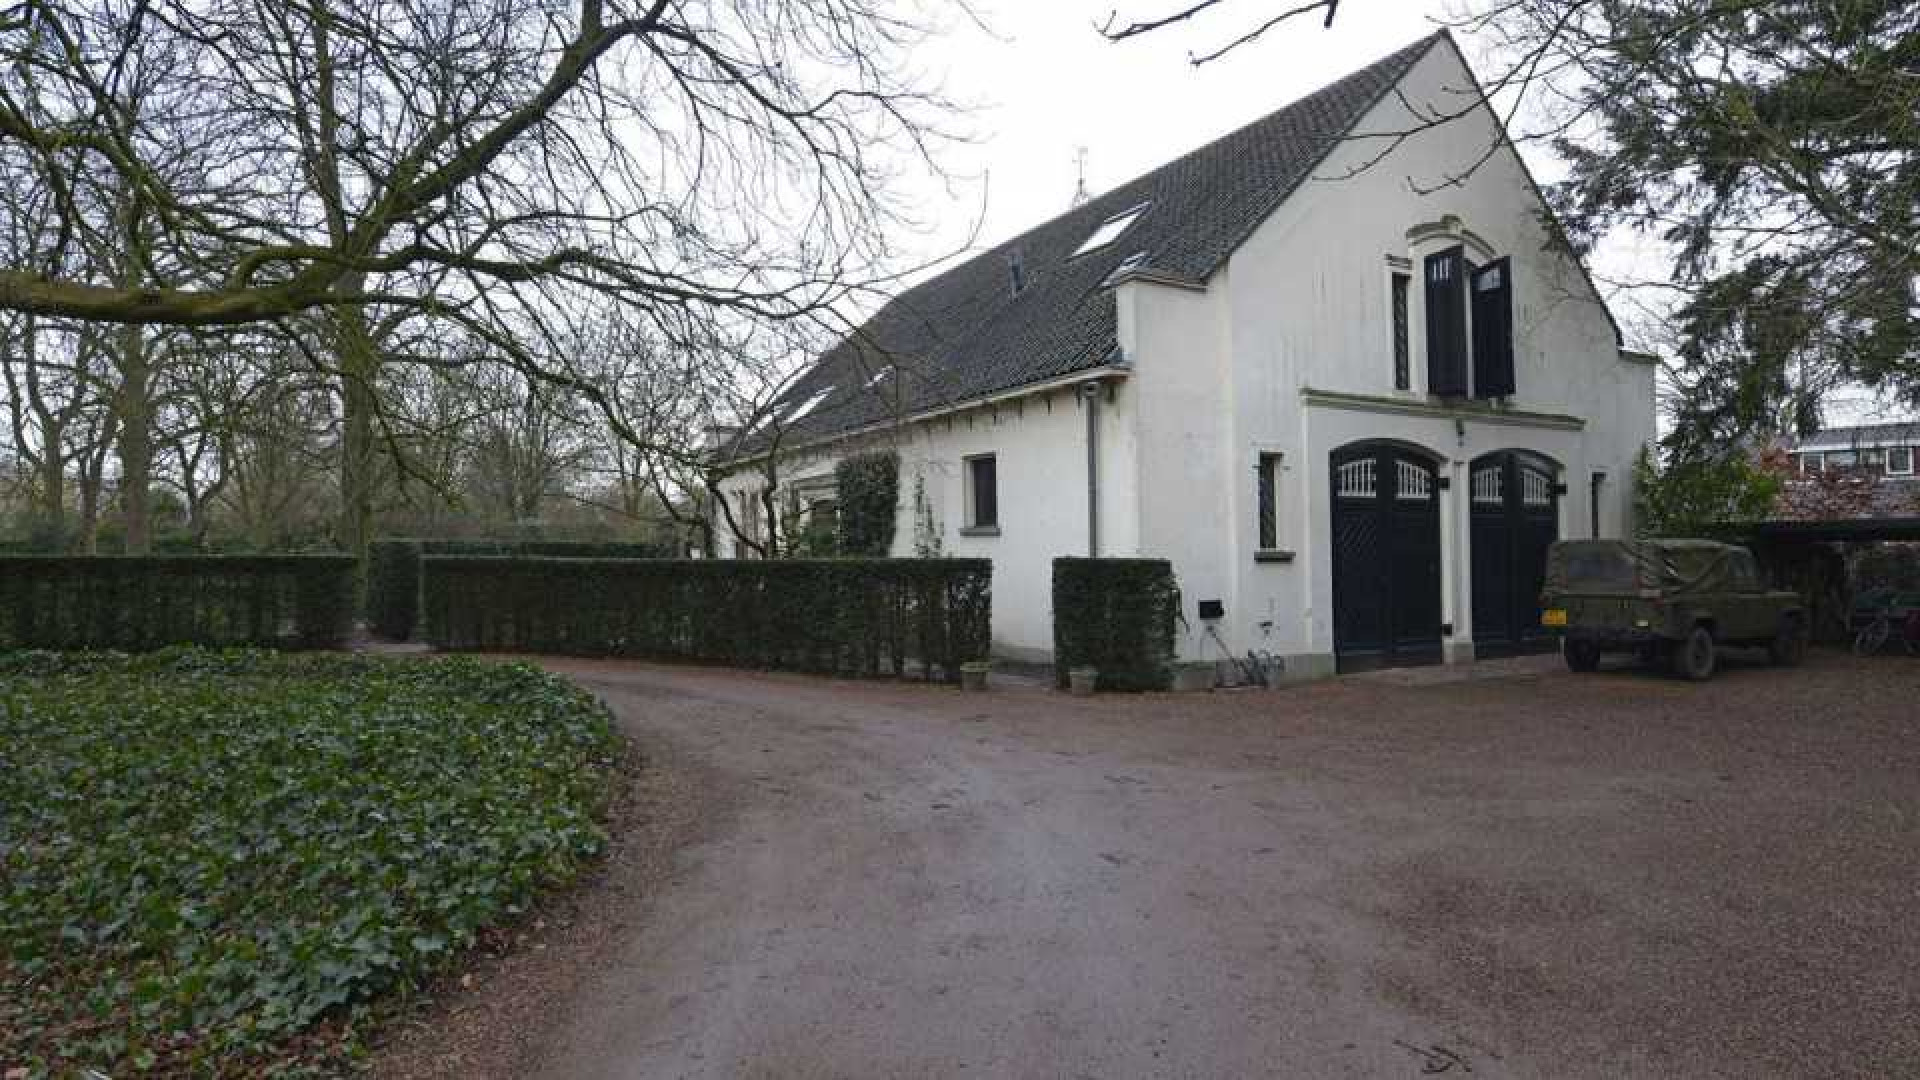 Prinses Irene verkoopt haar landhuis in Wijk bij Duurstede. Zie foto's 15